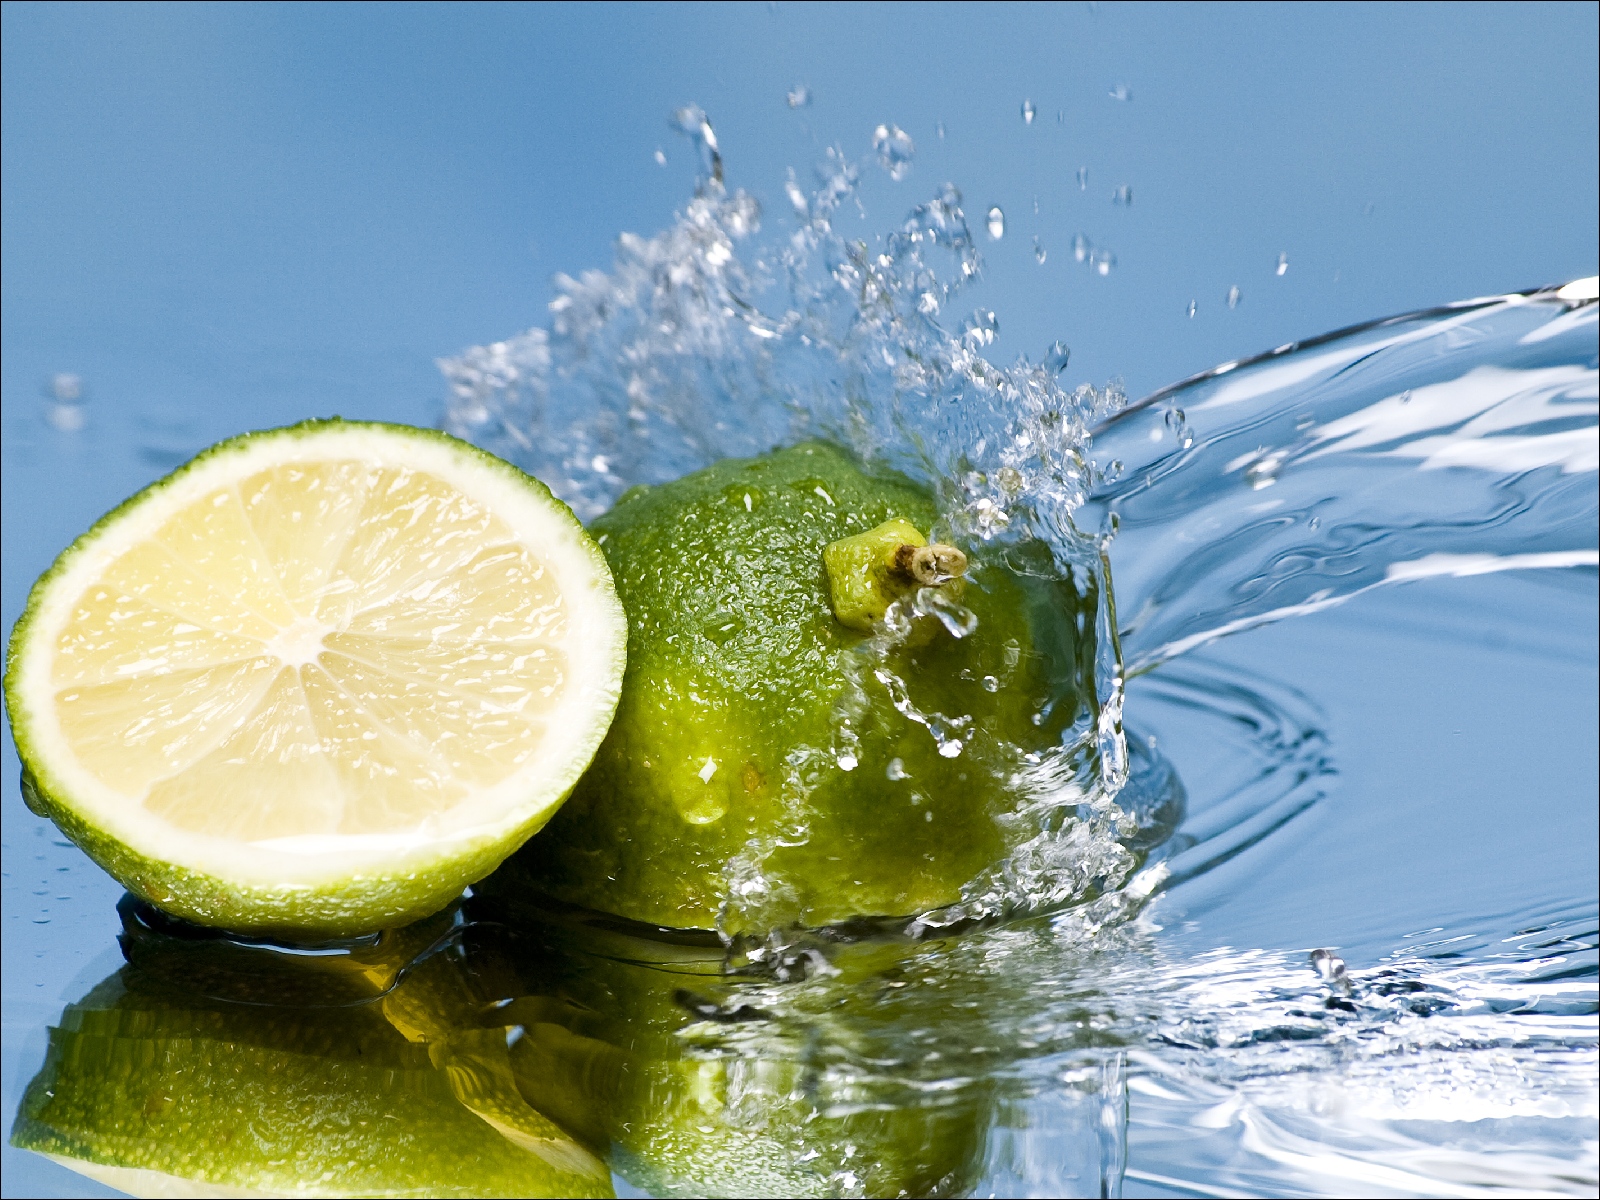 еда лимон мандарин вода лайм food lemon Mandarin water lime без смс